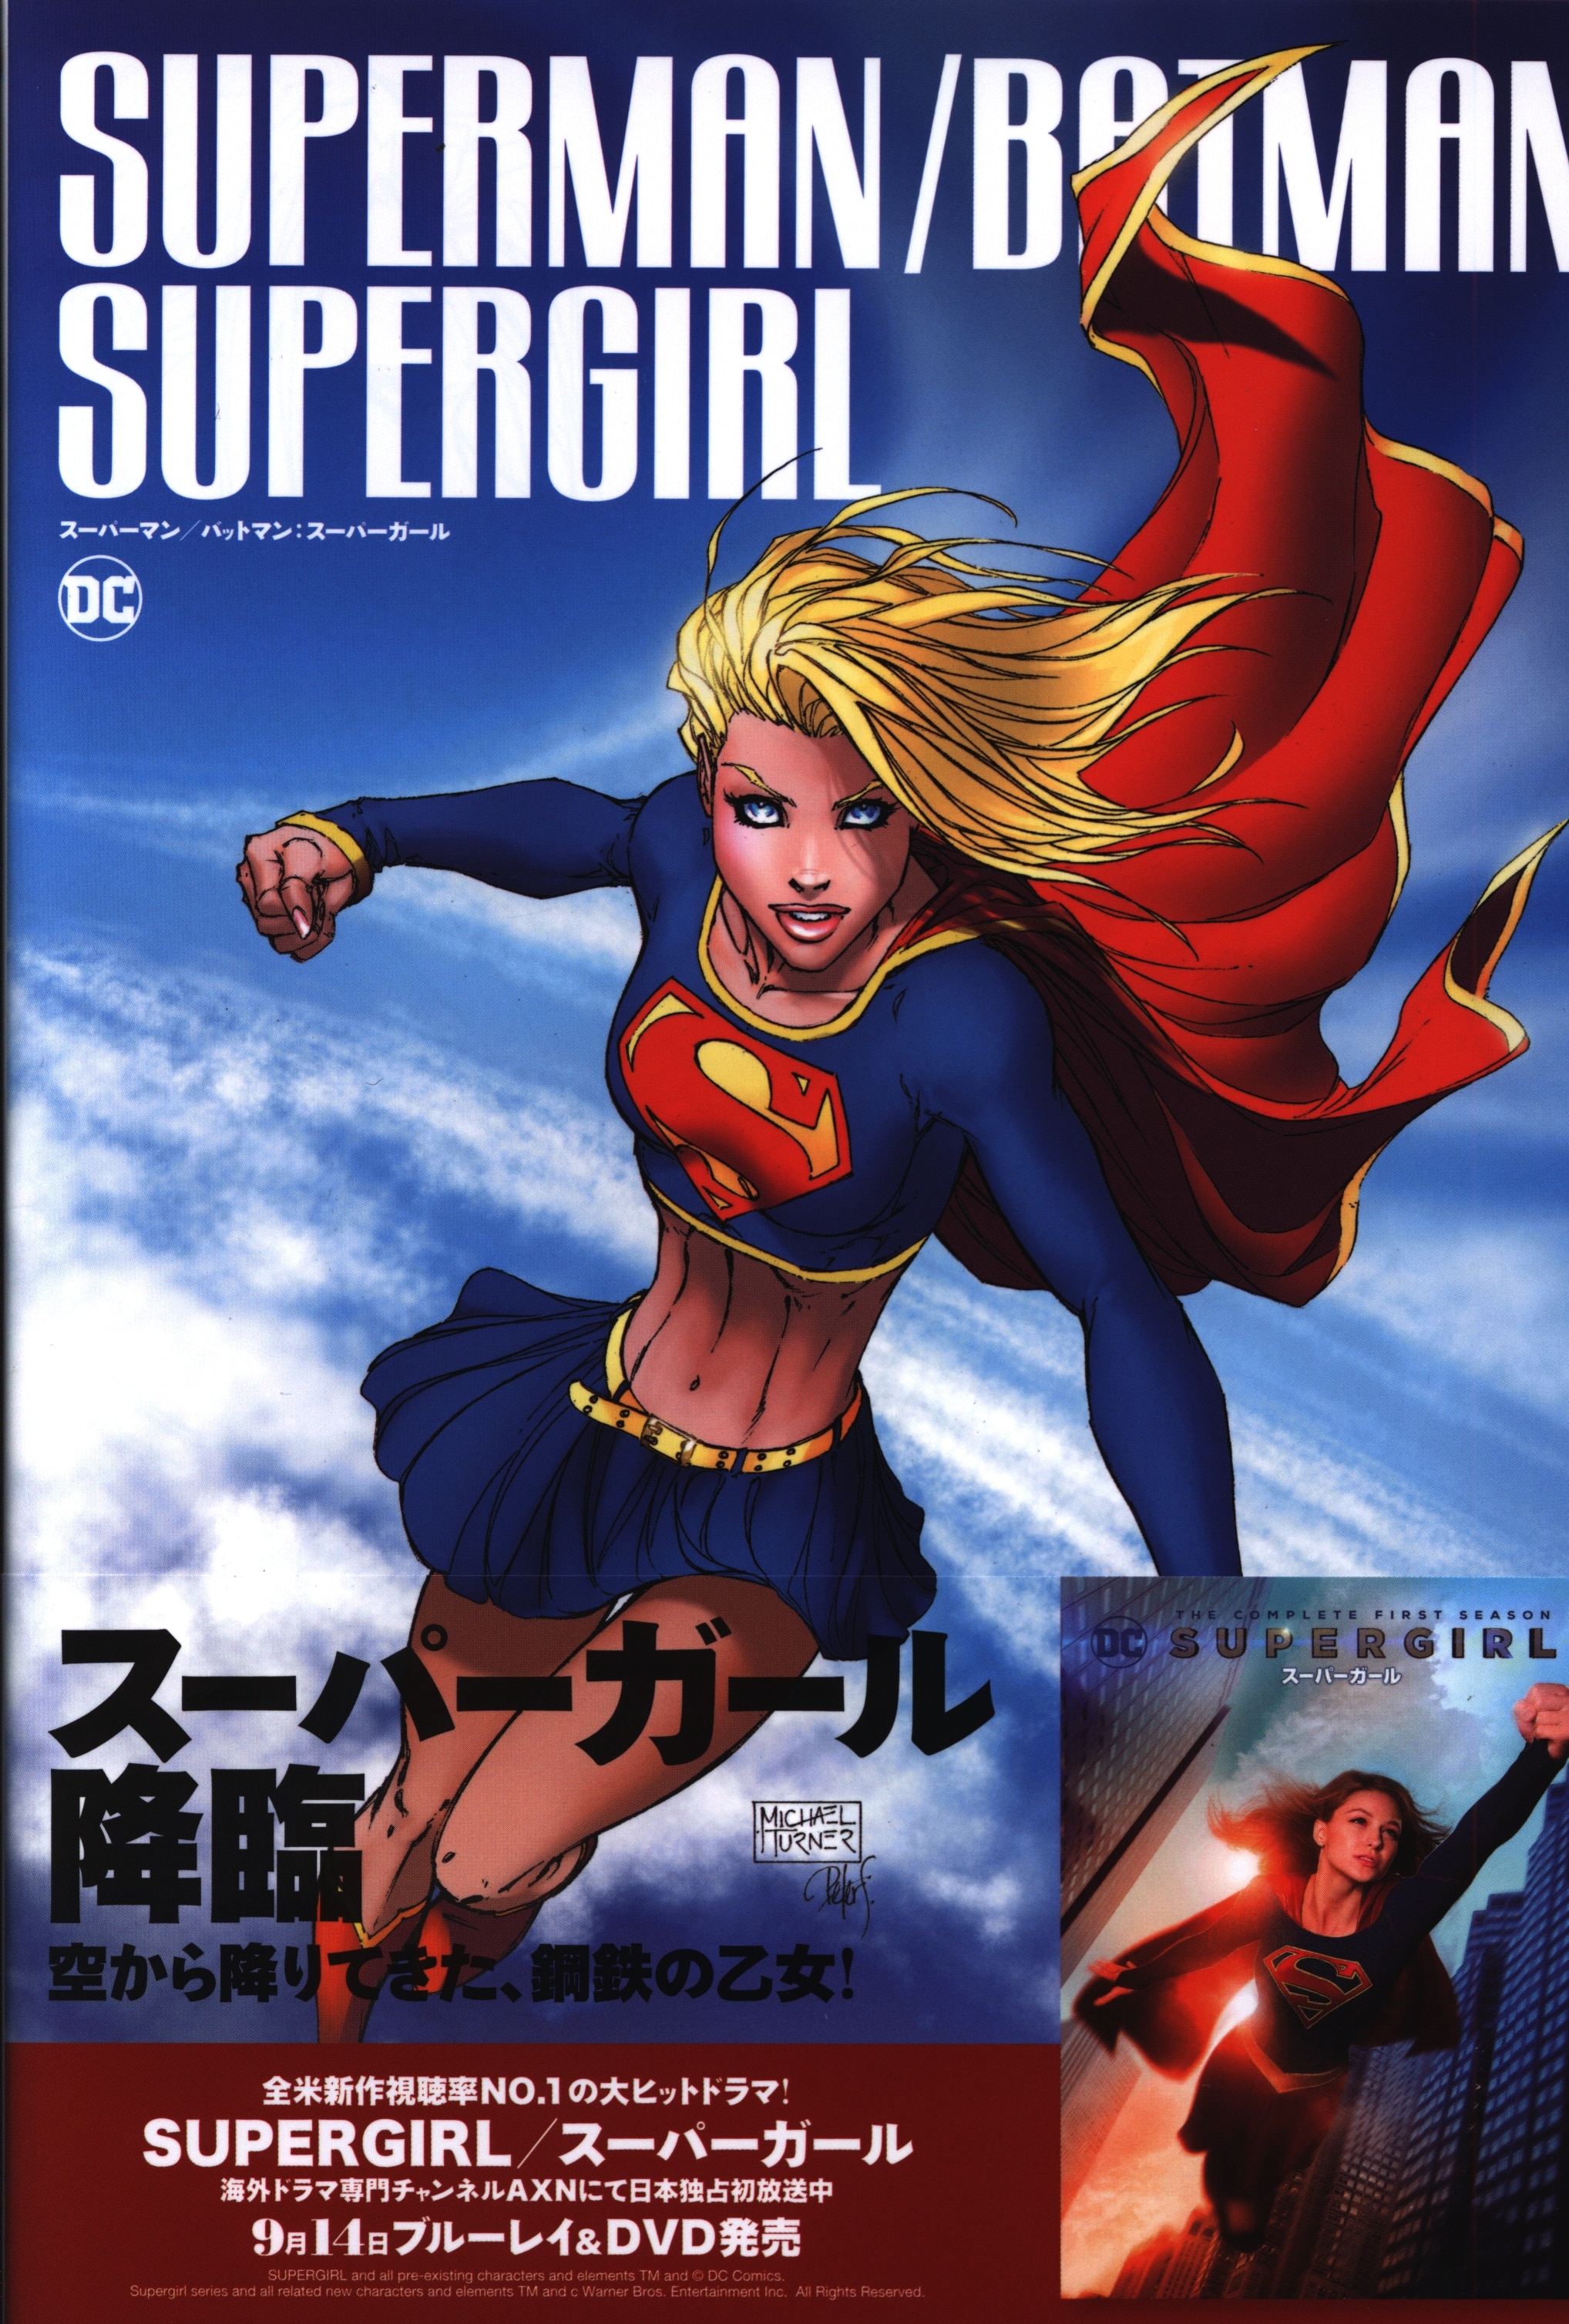 Batman And Supergirl Porn - Village Books Michael ãƒ» Turner Superman / Batman : Supergirl ( with obi) |  Mandarake Online Shop